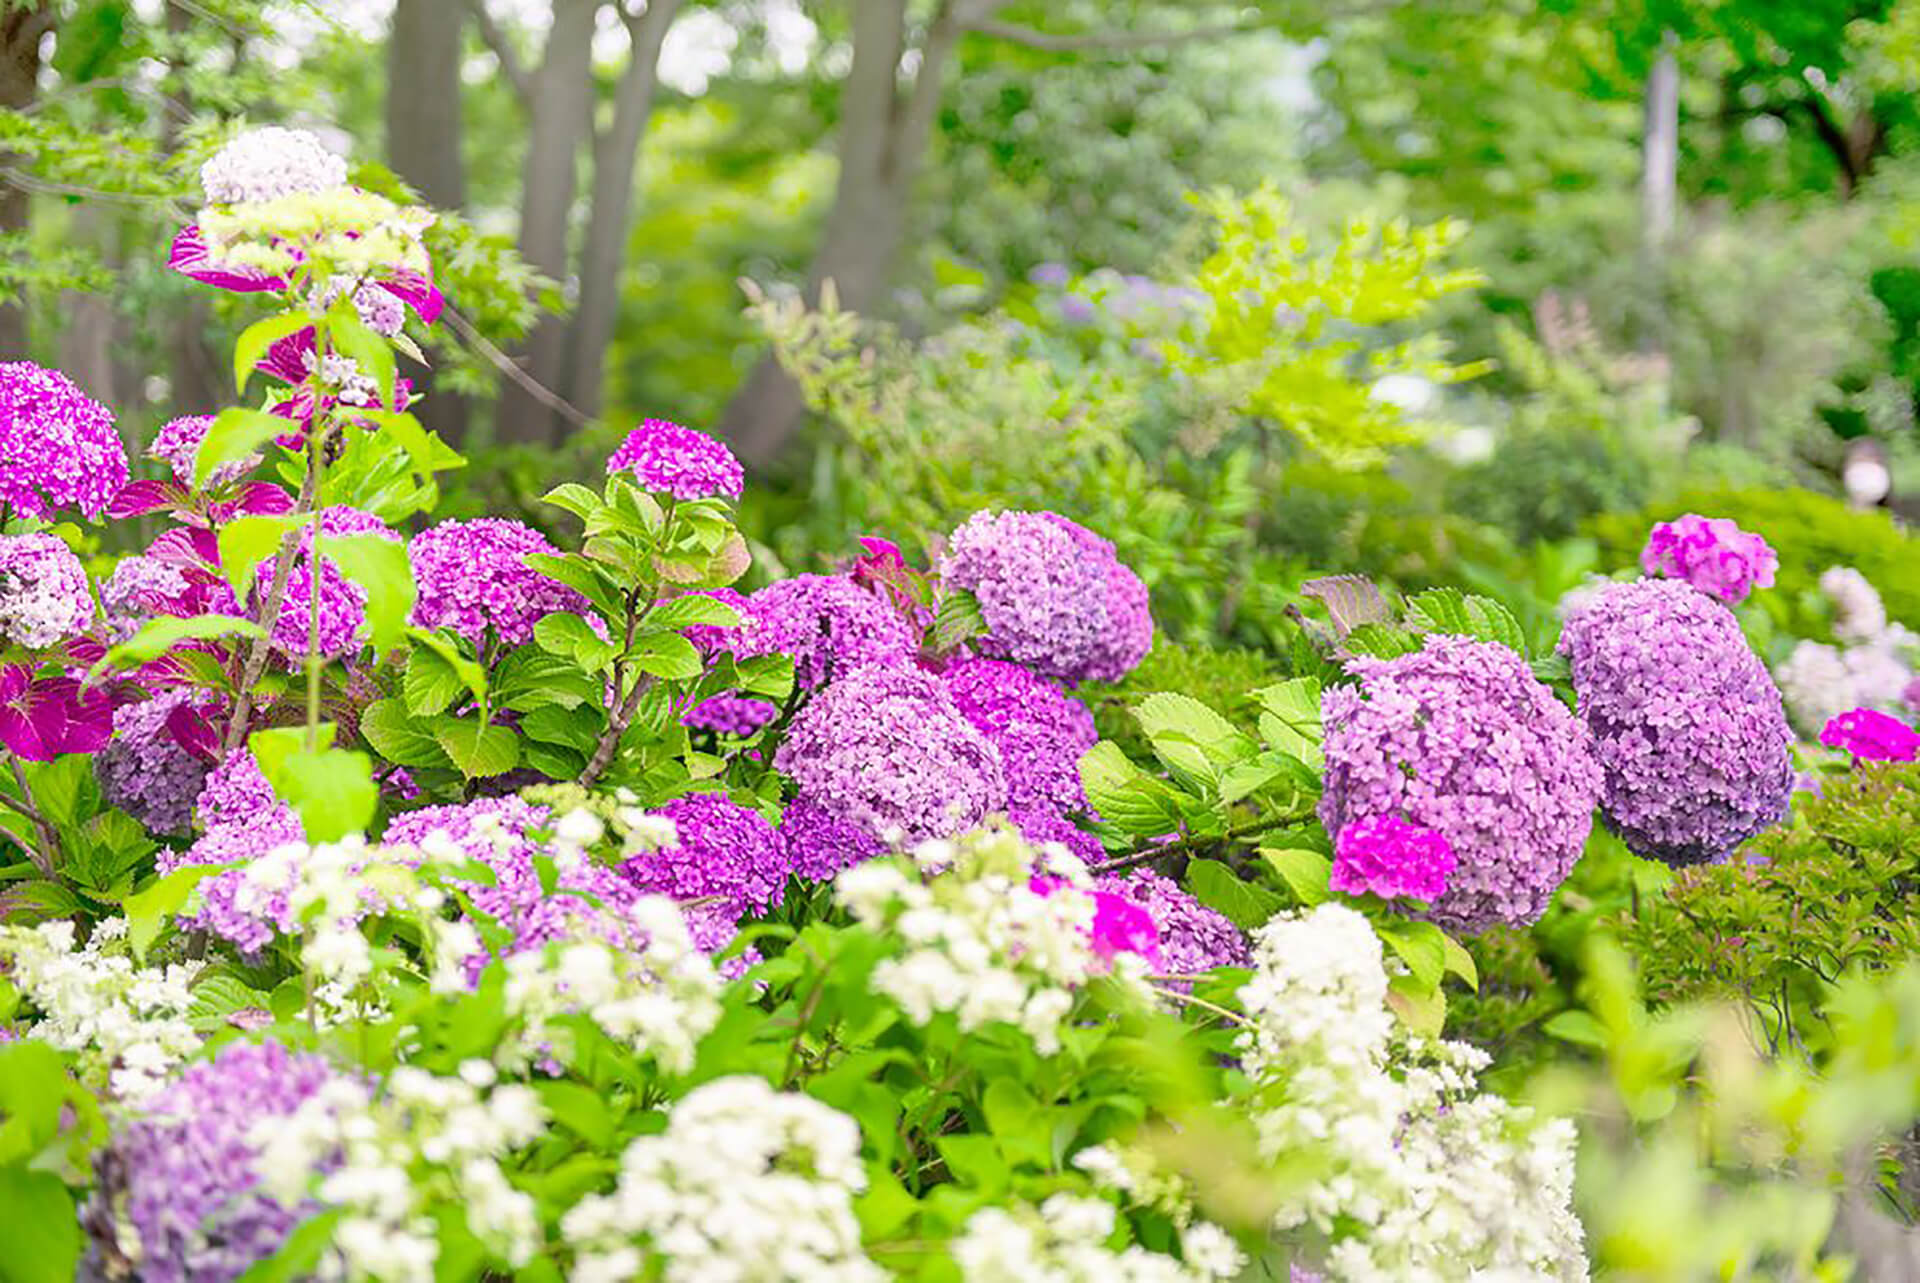 ミッドタウン ガーデンと紫陽花を知るガイドツアー 関東のお出かけ情報ならオソトイコ